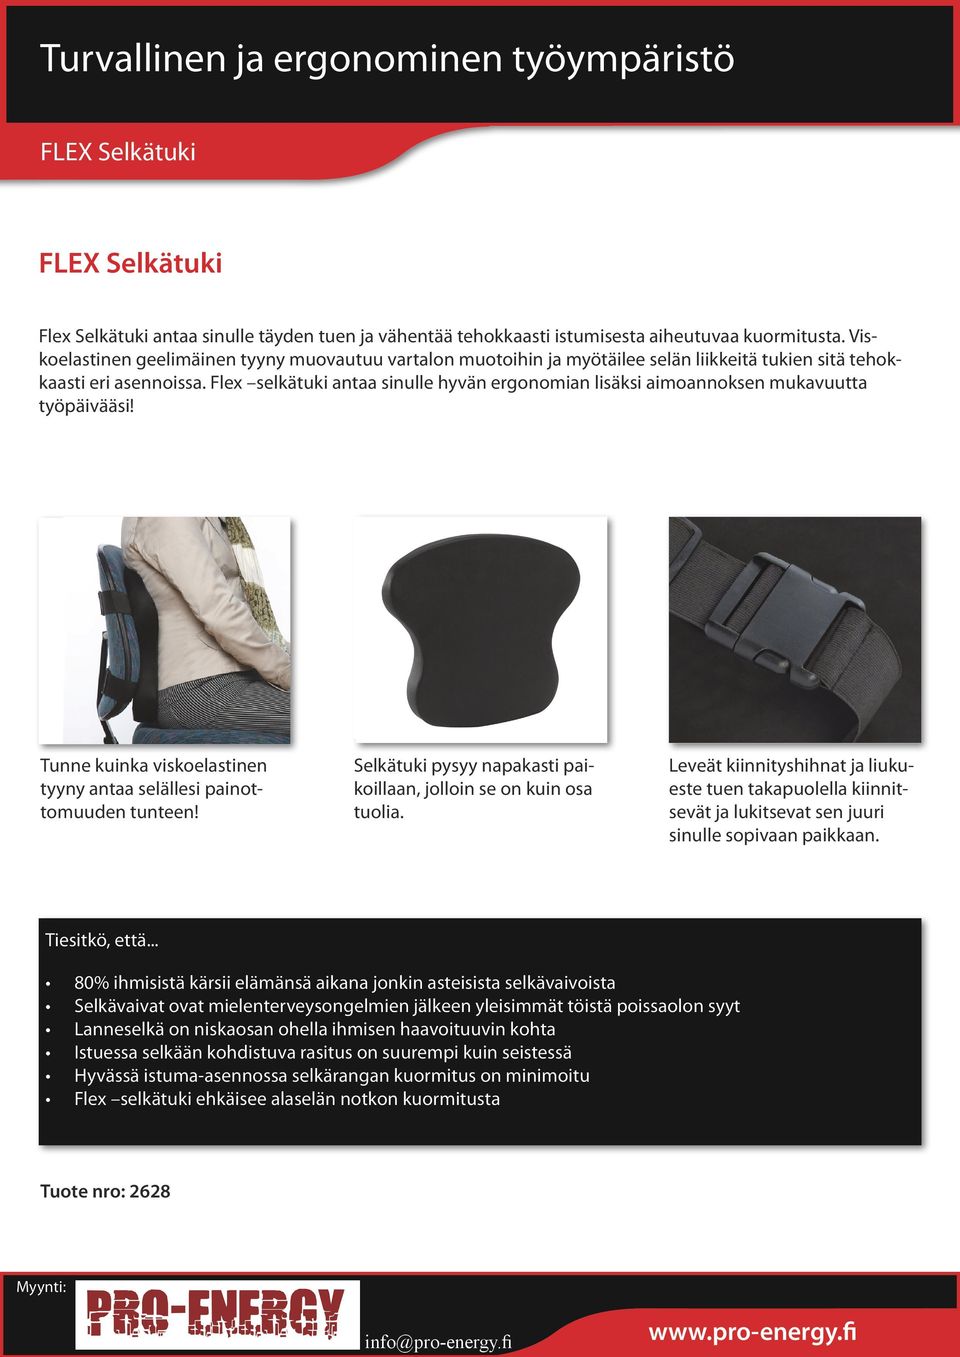 Flex selkätuki antaa sinulle hyvän ergonomian lisäksi aimoannoksen mukavuutta työpäivääsi! Tunne kuinka viskoelastinen tyyny antaa selällesi painottomuuden tunteen!